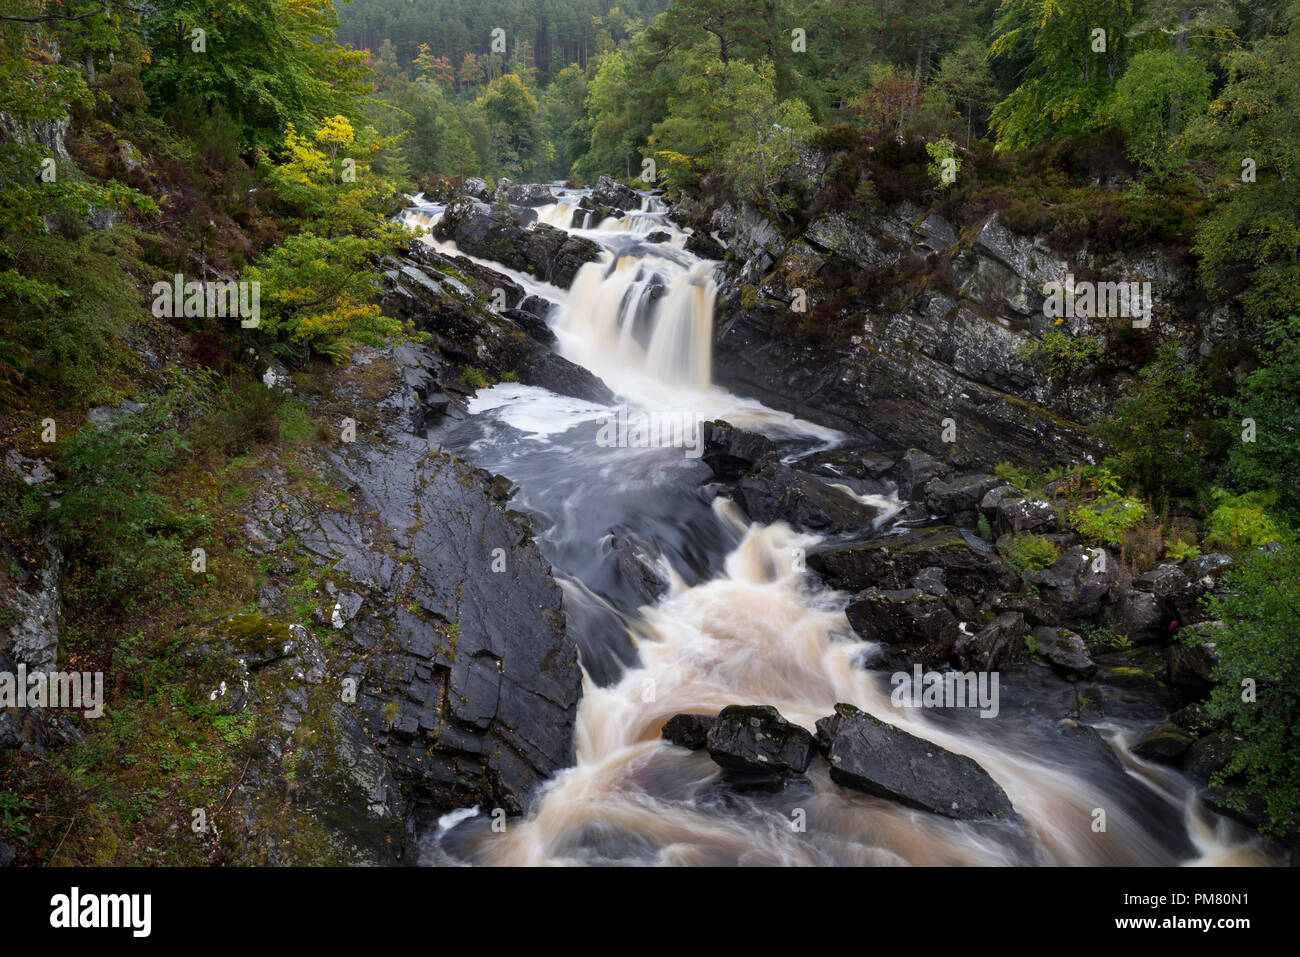 Rogie Falls cascate dove vi è un salto di salmone su l'acqua nera fiume, vicino a Contin, Ross-shire, Highlands scozzesi, Scotland, Regno Unito Foto Stock